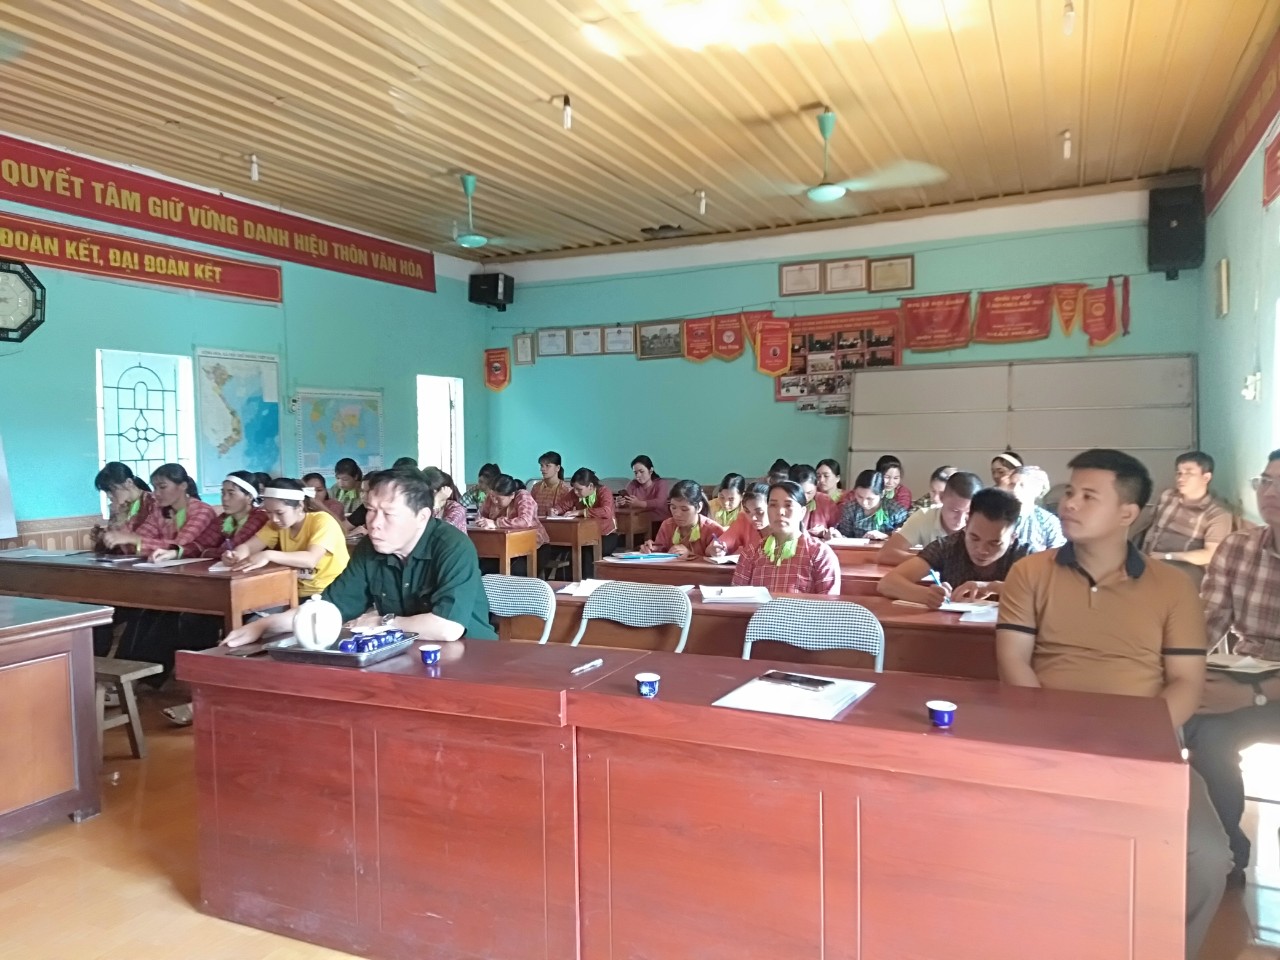 Hội viên phụ nữ, nông dân thôn Tồng Riền, xã Hải Yến tham dự lễ Khai giảng lớp học nghề